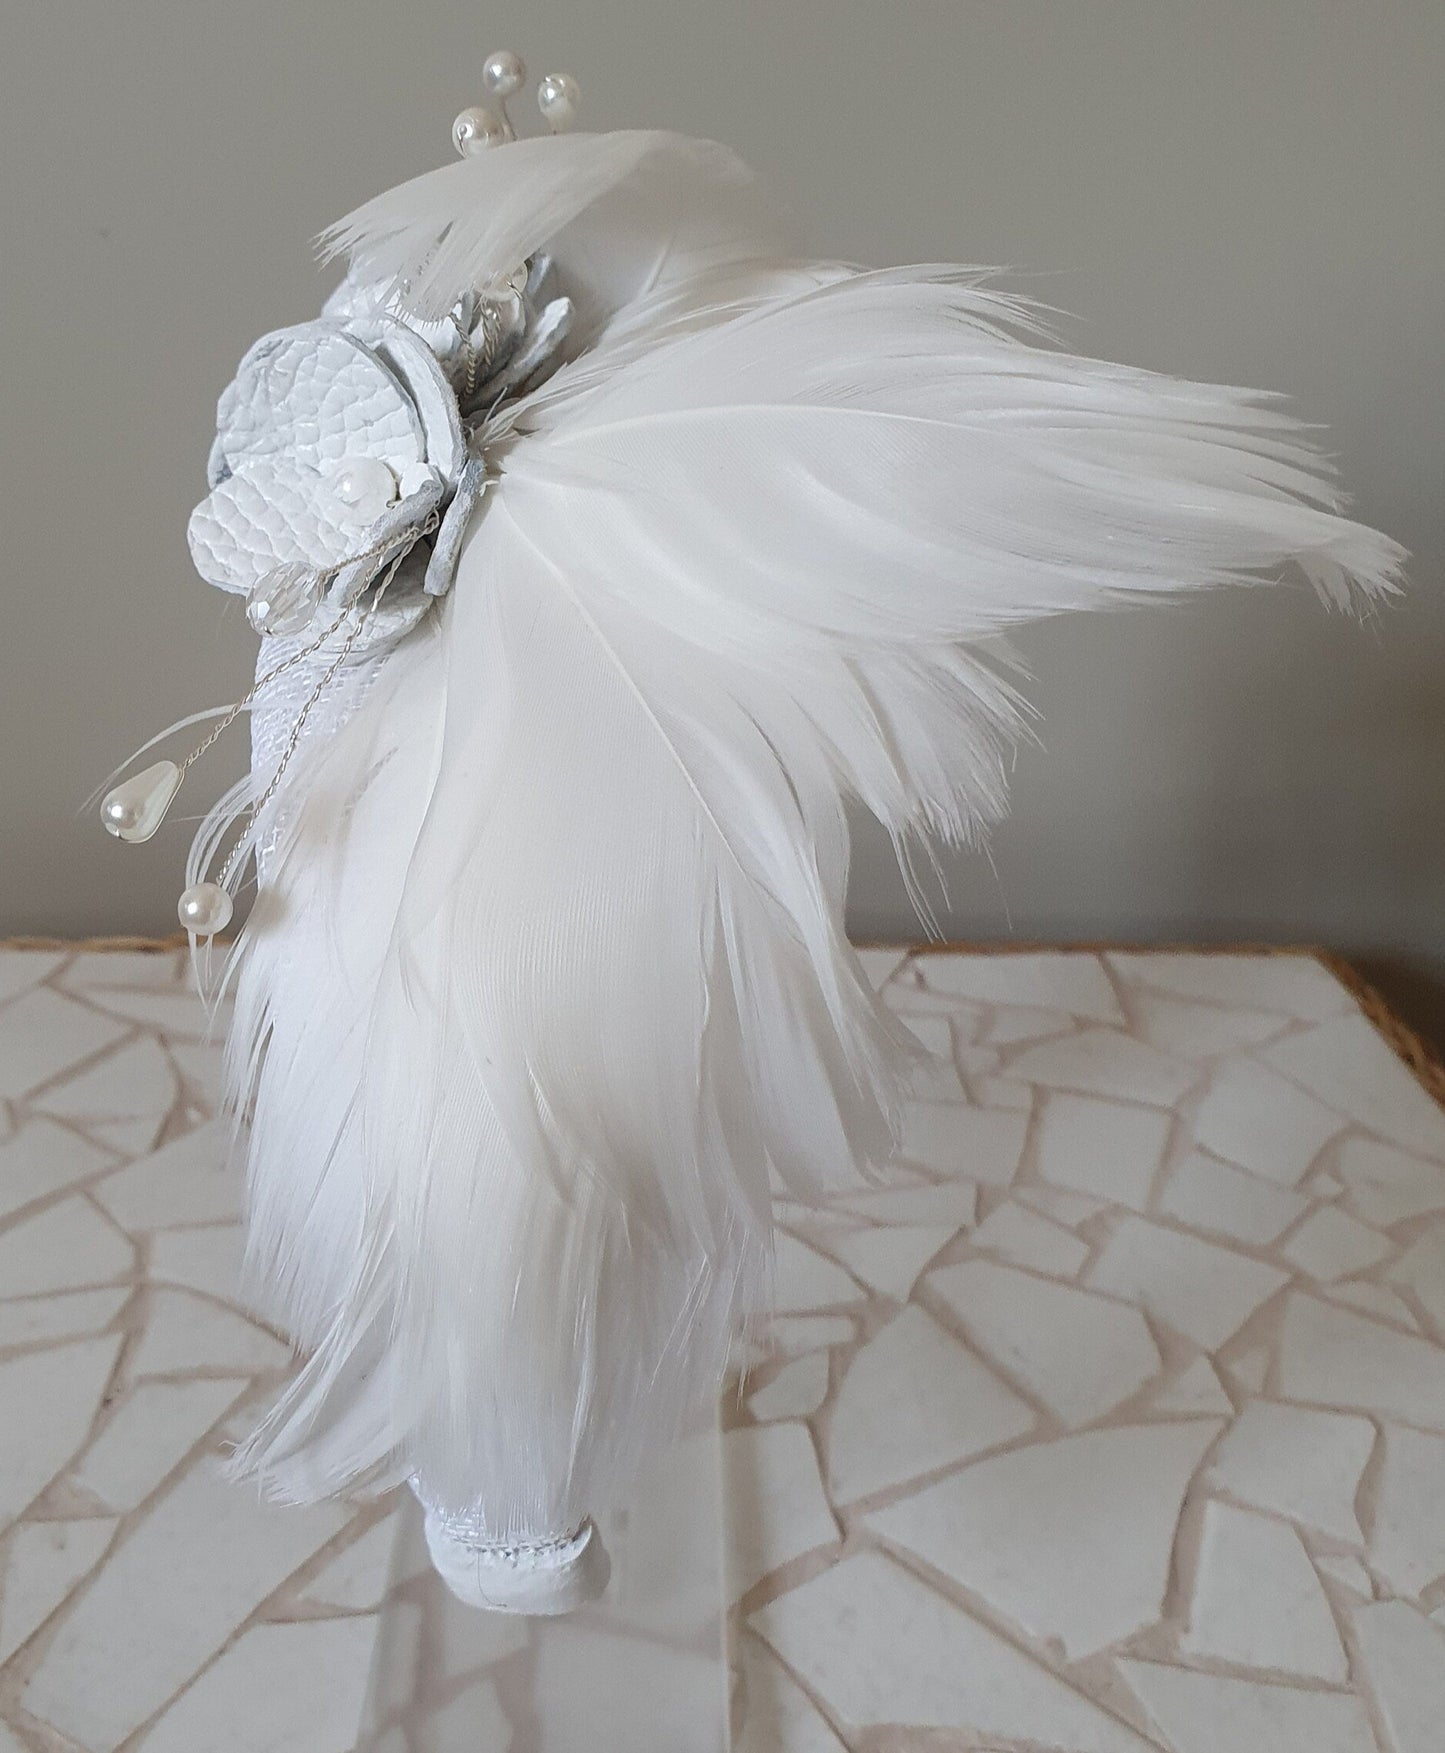 Handgemaakte witte Hoofdband van natuurlijk leder met zwanenveren- Elegant haarband, trouwhoofdband, bruidstiara speciale gelegenheid.